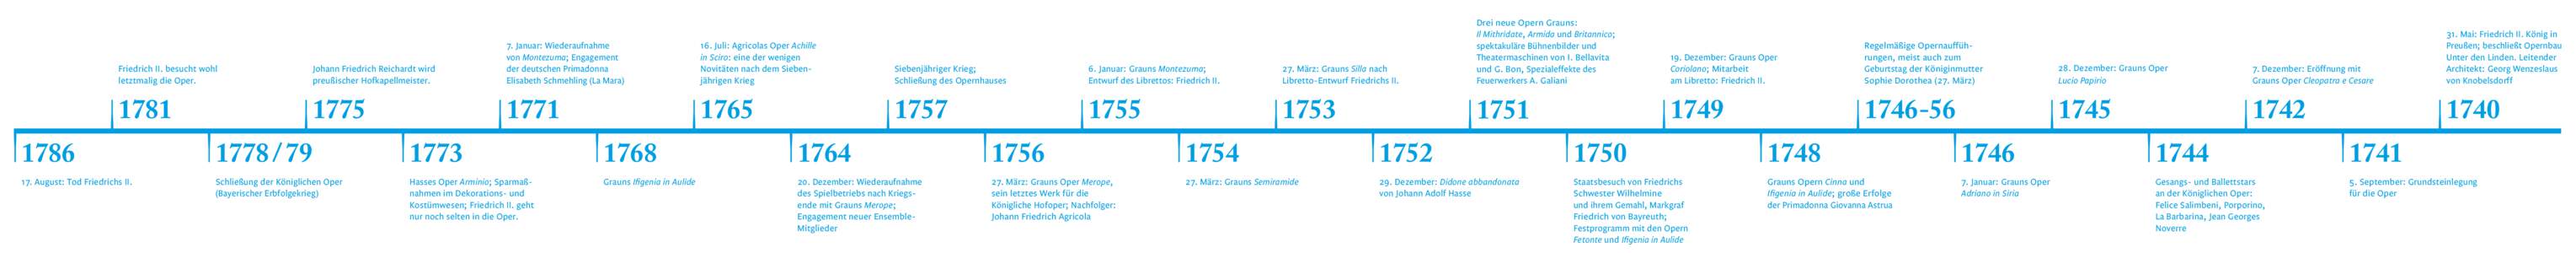 1786  Friedrich II. besucht wohl letztmalig die Oper.  Johann Friedrich Reichardt wird